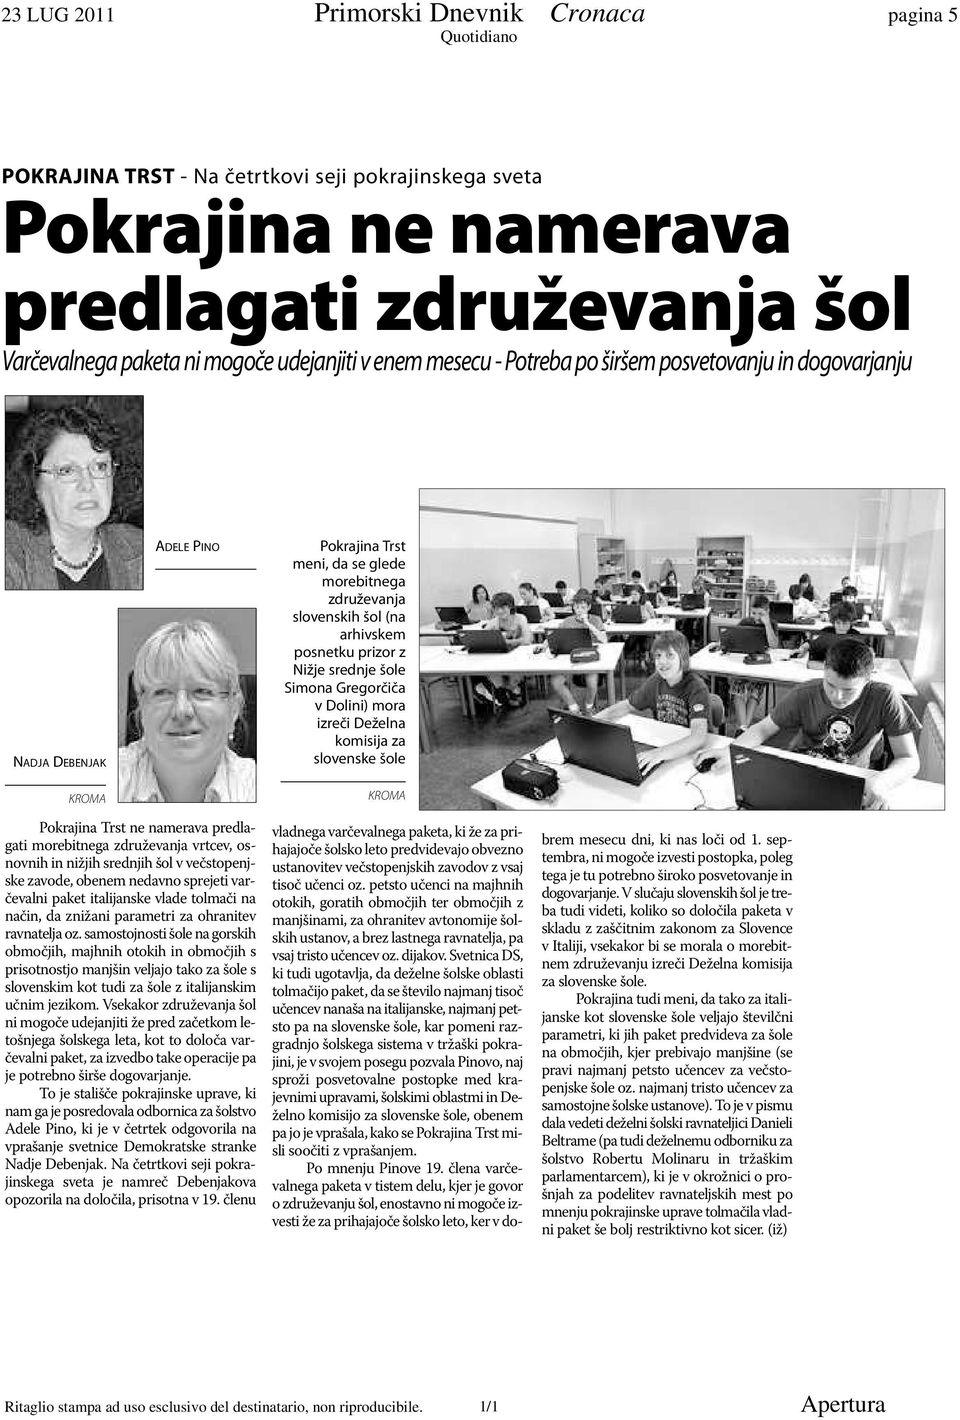 srednje šole Simona Gregorčiča v Dolini) mora izreči Deželna komisija za slovenske šole KROMA Pokrajina Trst ne namerava predlagati morebitnega združevanja vrtcev, osnovnih in nižjih srednjih šol v